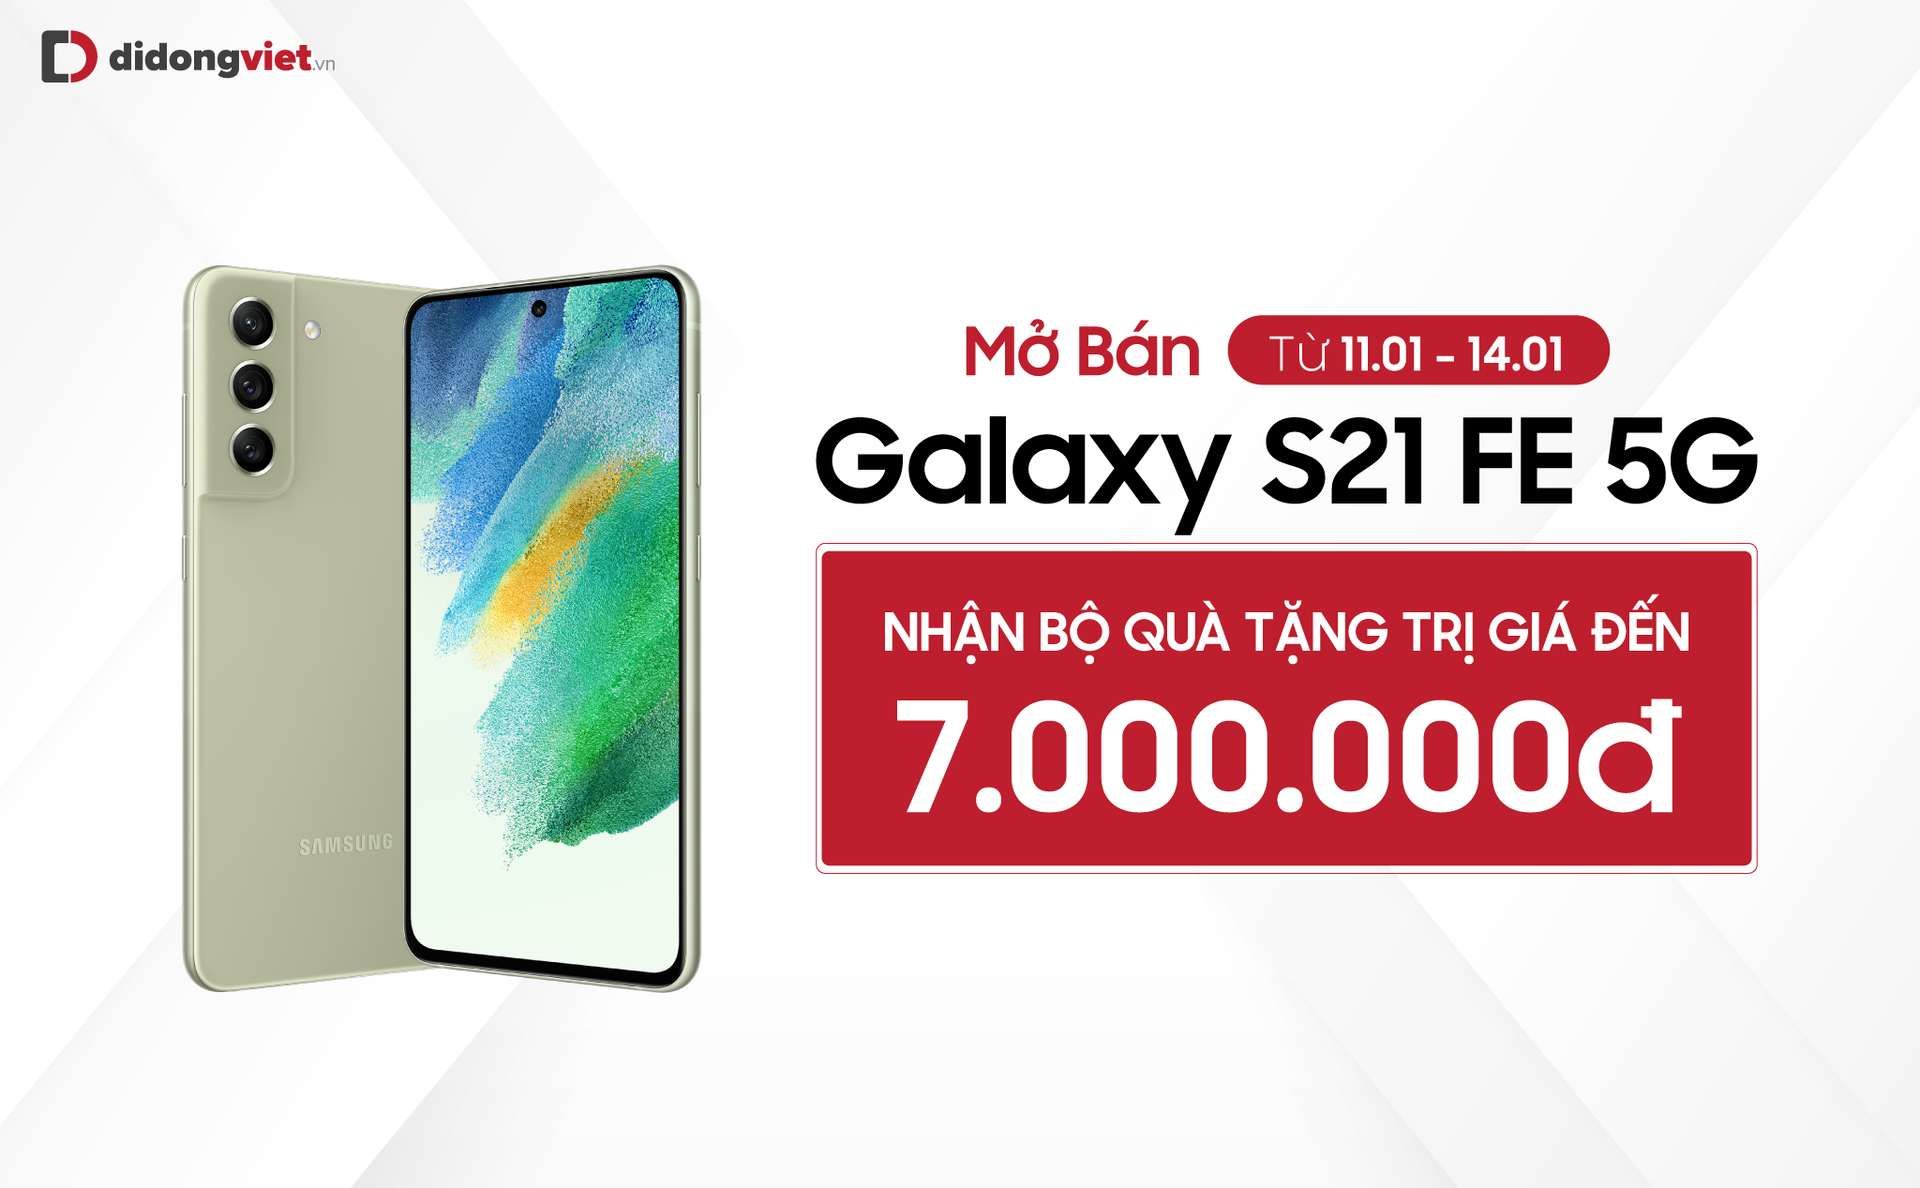 Samsung Galaxy S21 FE chính thức mở bán tại Việt Nam kèm bộ quà tặng lên đến 7 triệu đồng